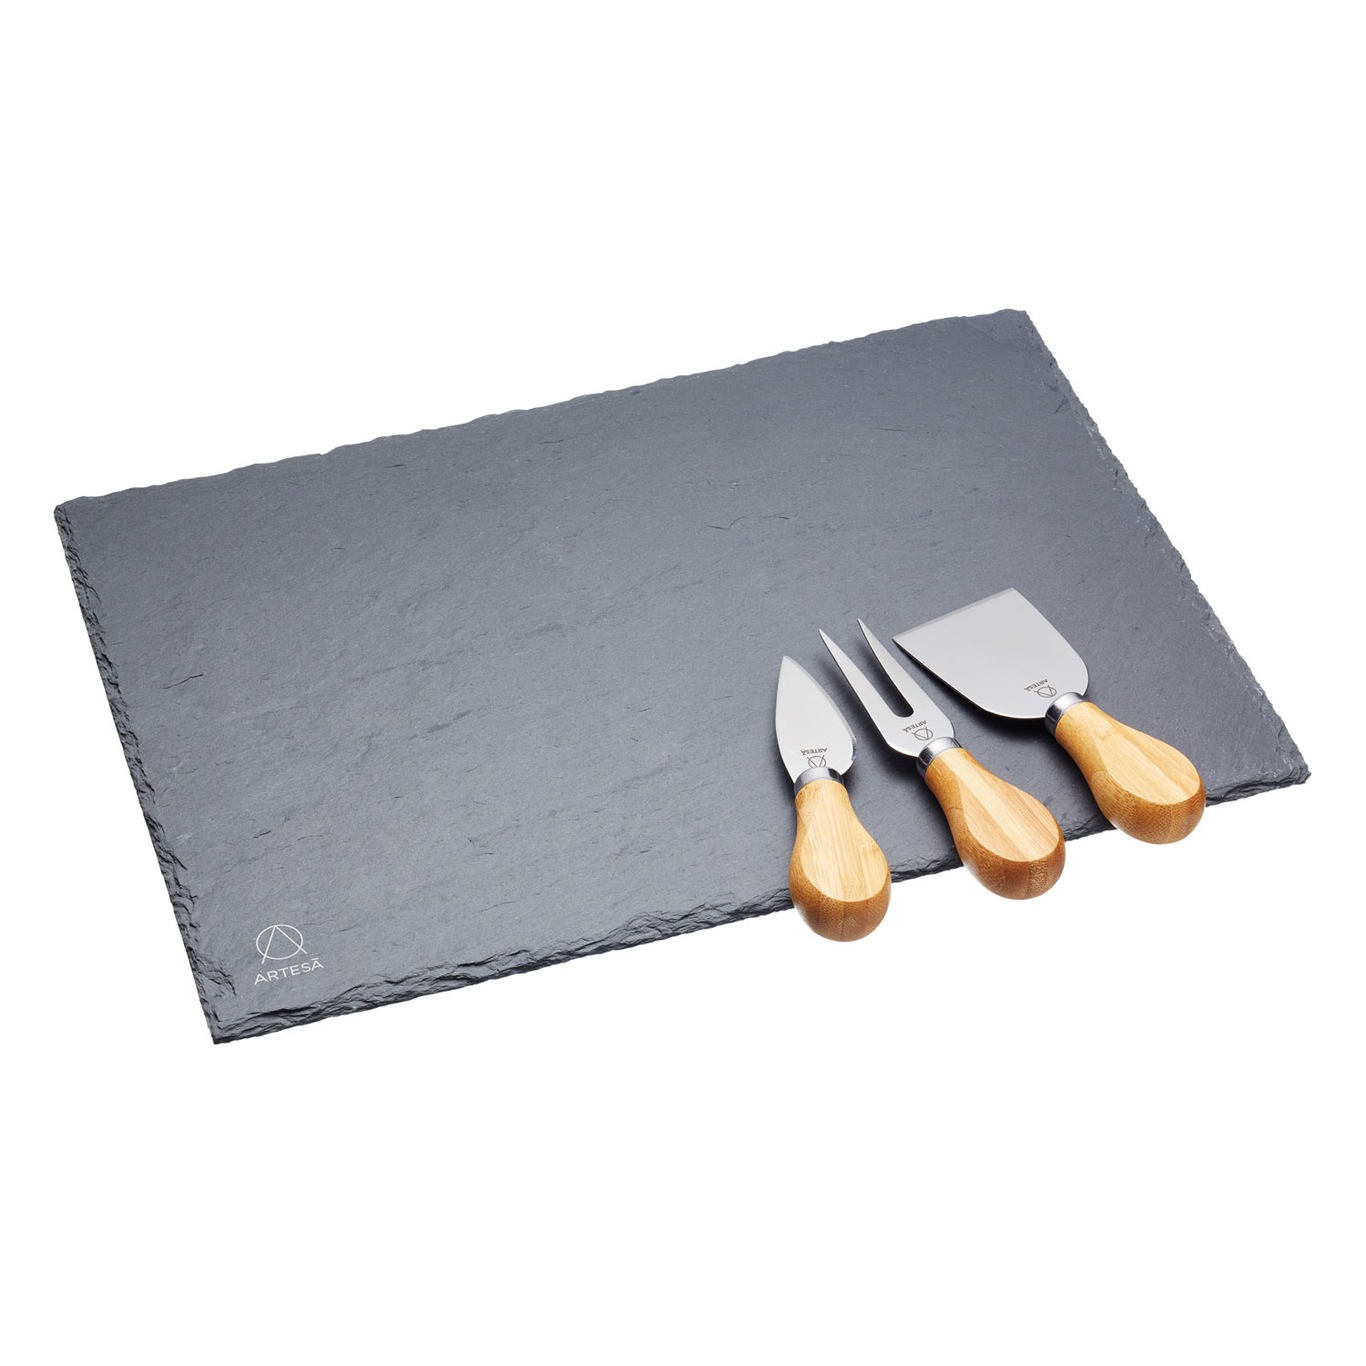 Artesà Cheese Board & Knife Set, Slate